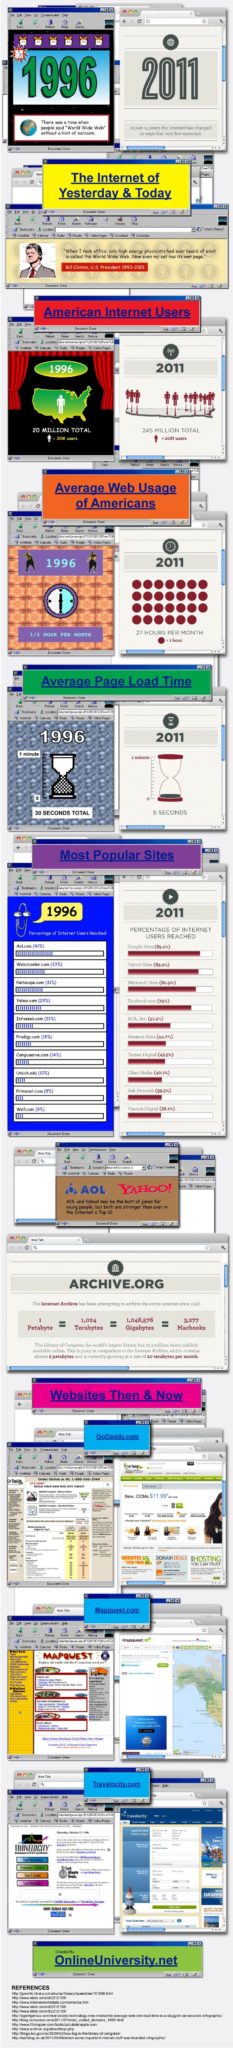 infographie linternet dhier et daujourdhui 1996 vs 2011 1